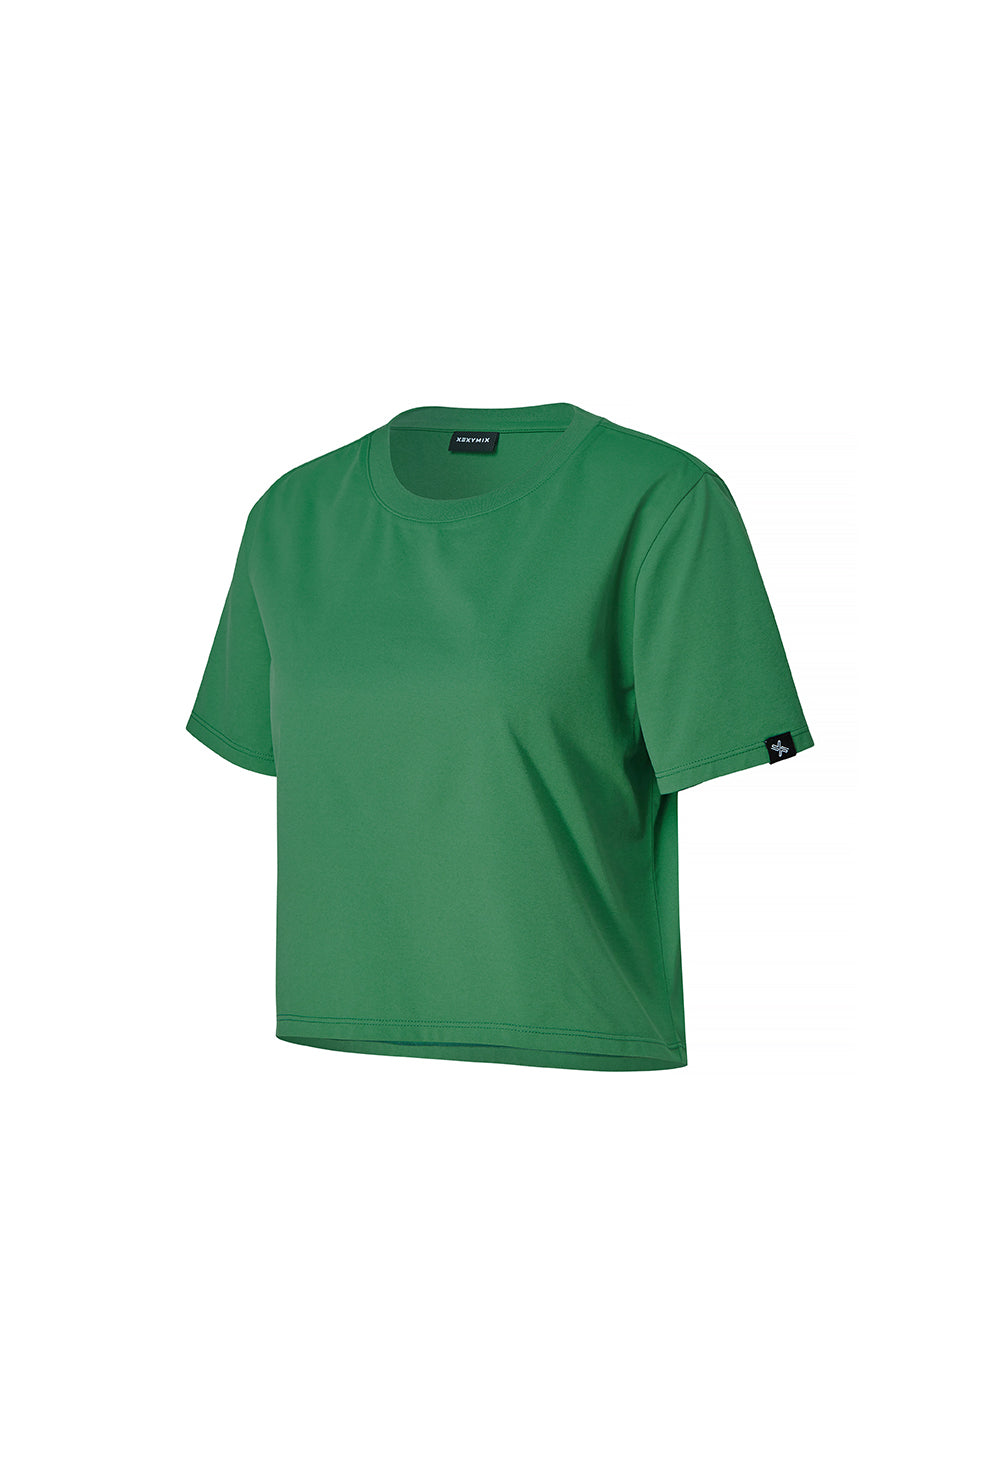 Basic Scratch Crop T-Shirt - Eden Green